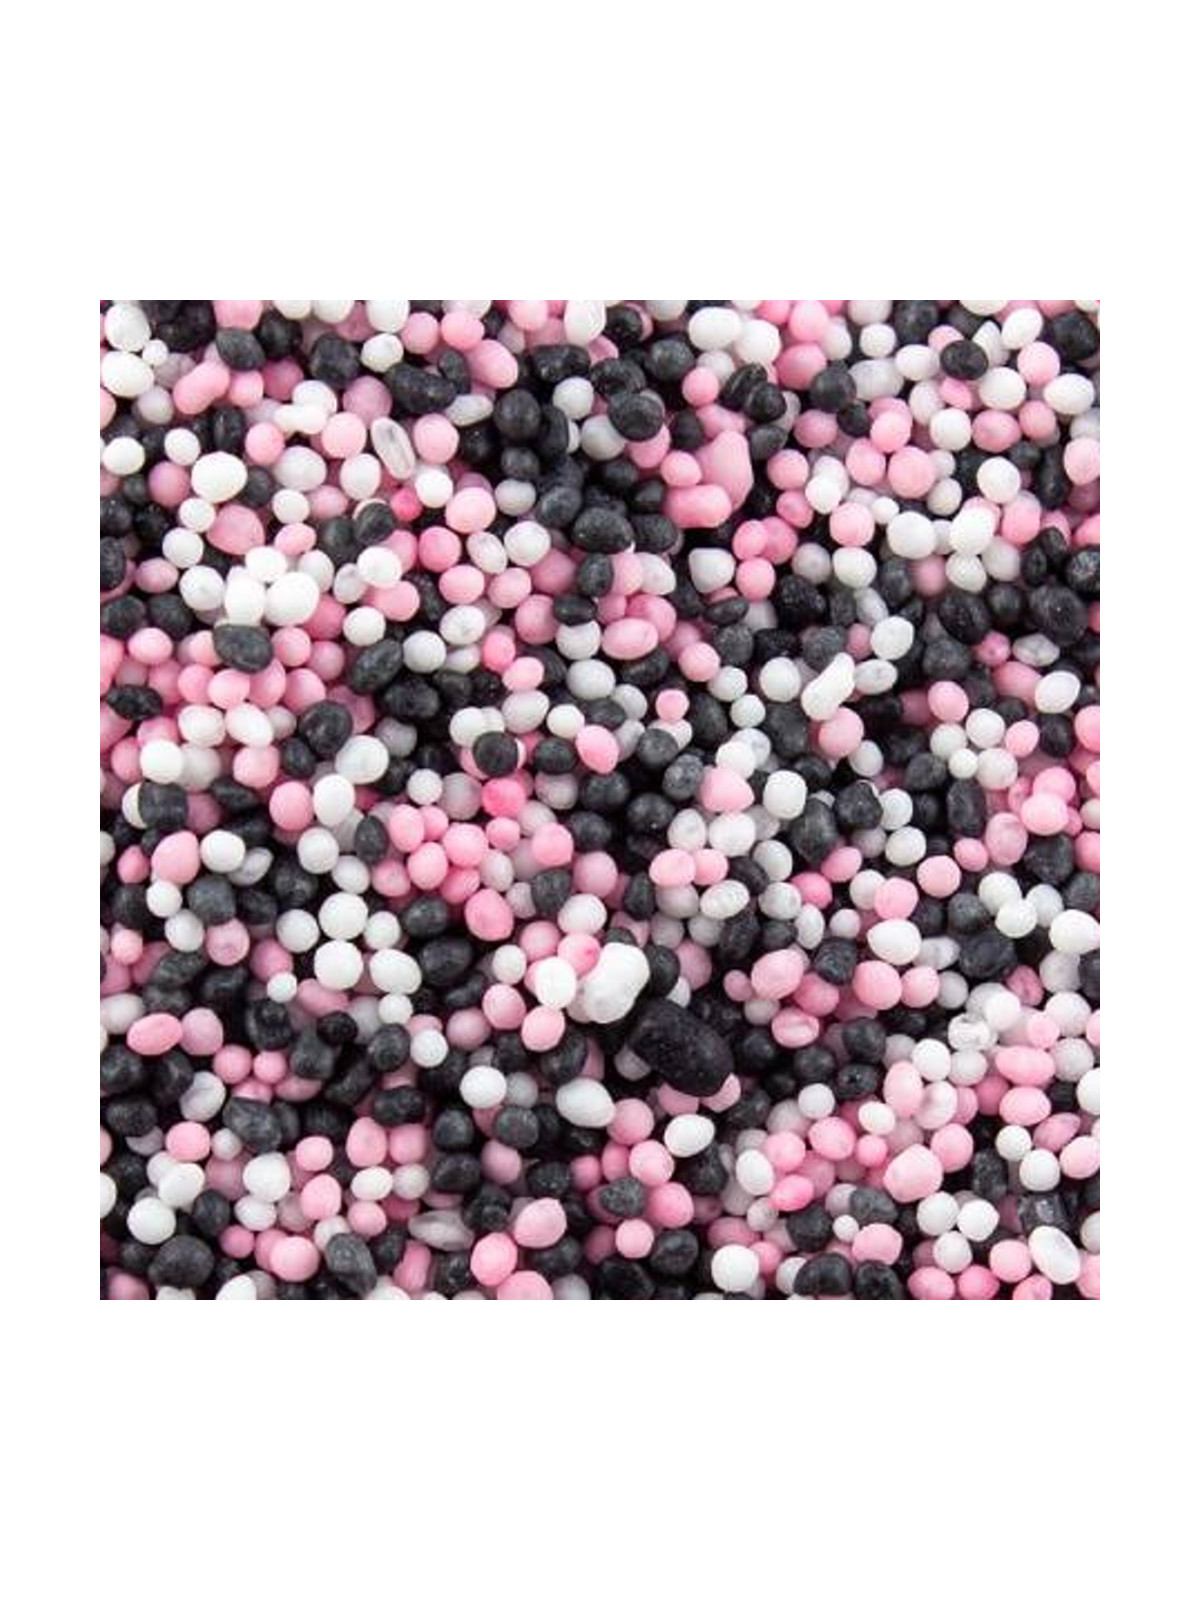 Małe perełki cukrowe - różowe/białe/czarne - 50g